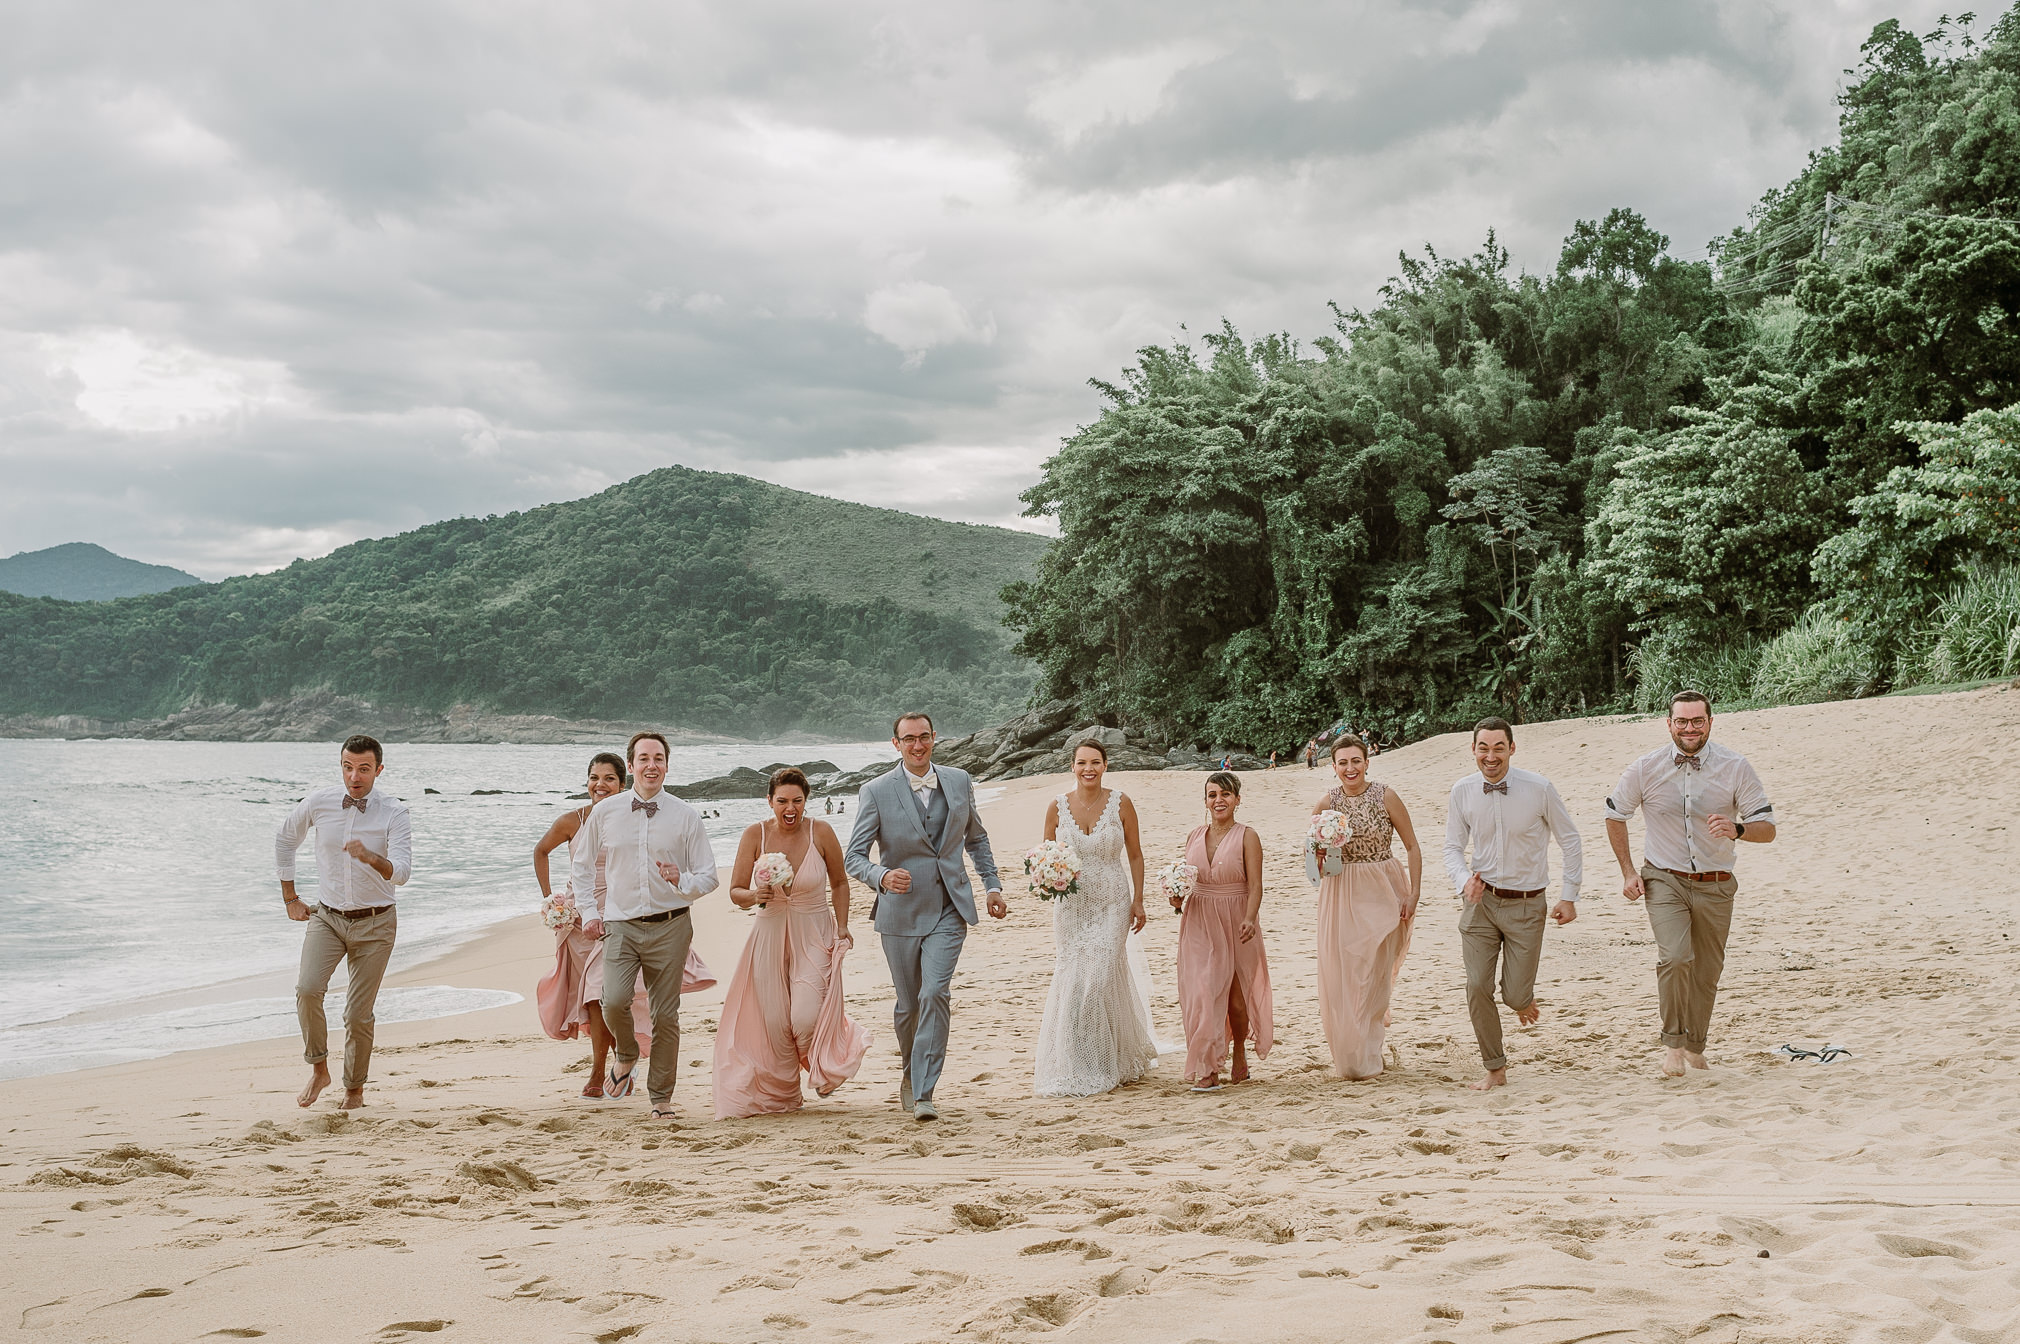 Destination wedding rústico e bem brasileiro cercado de natureza